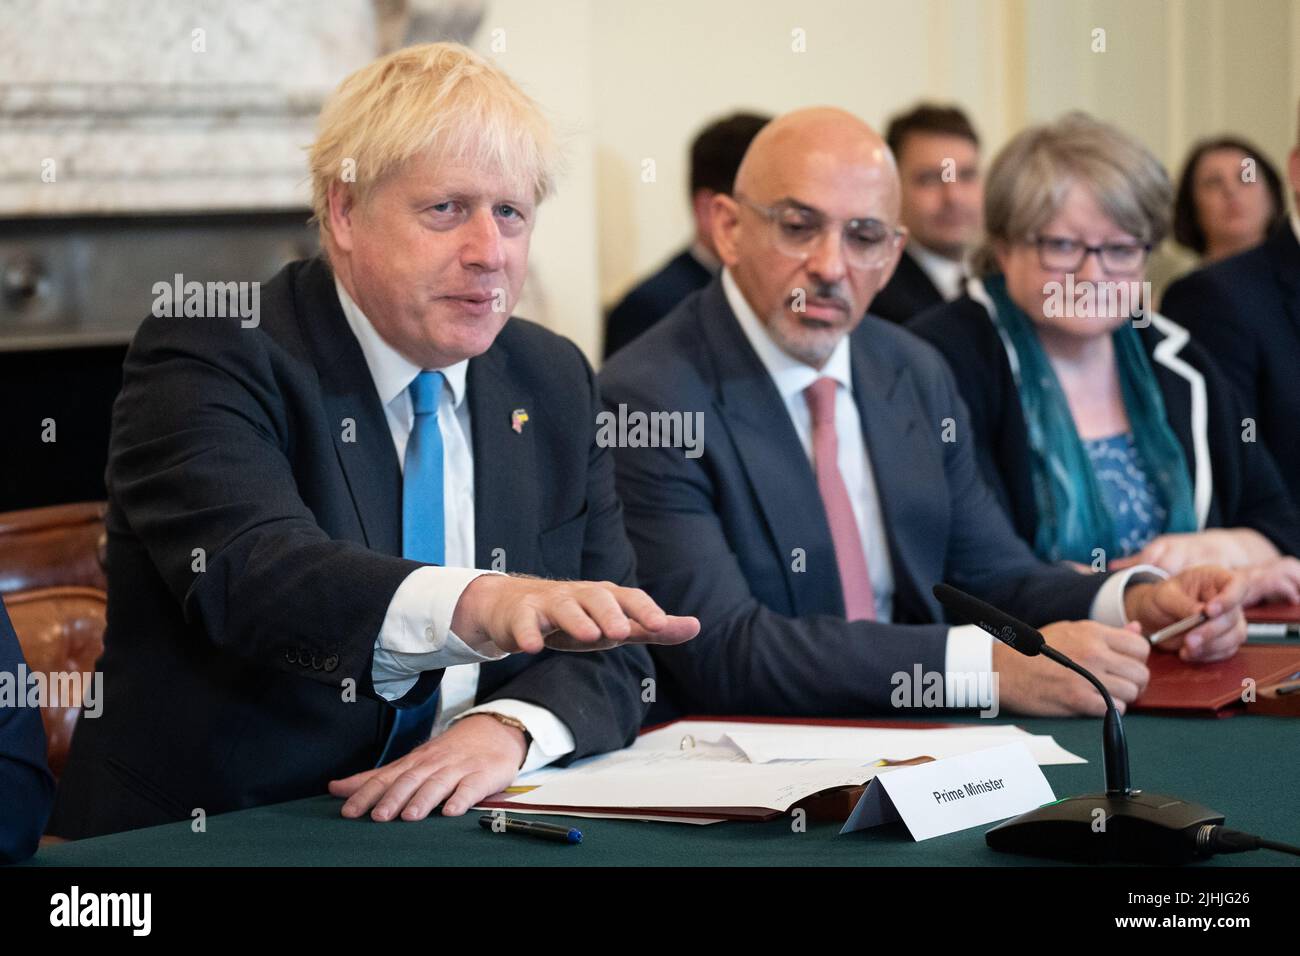 (Von links nach rechts) Premierminister Boris Johnson, Schatzkanzler Nadhim Zahawi und Arbeits- und Rentenministerin Therese Coffey während einer Kabinettssitzung in der Downing Street 10, London. Bilddatum: Dienstag, 19. Juli 2022. Stockfoto